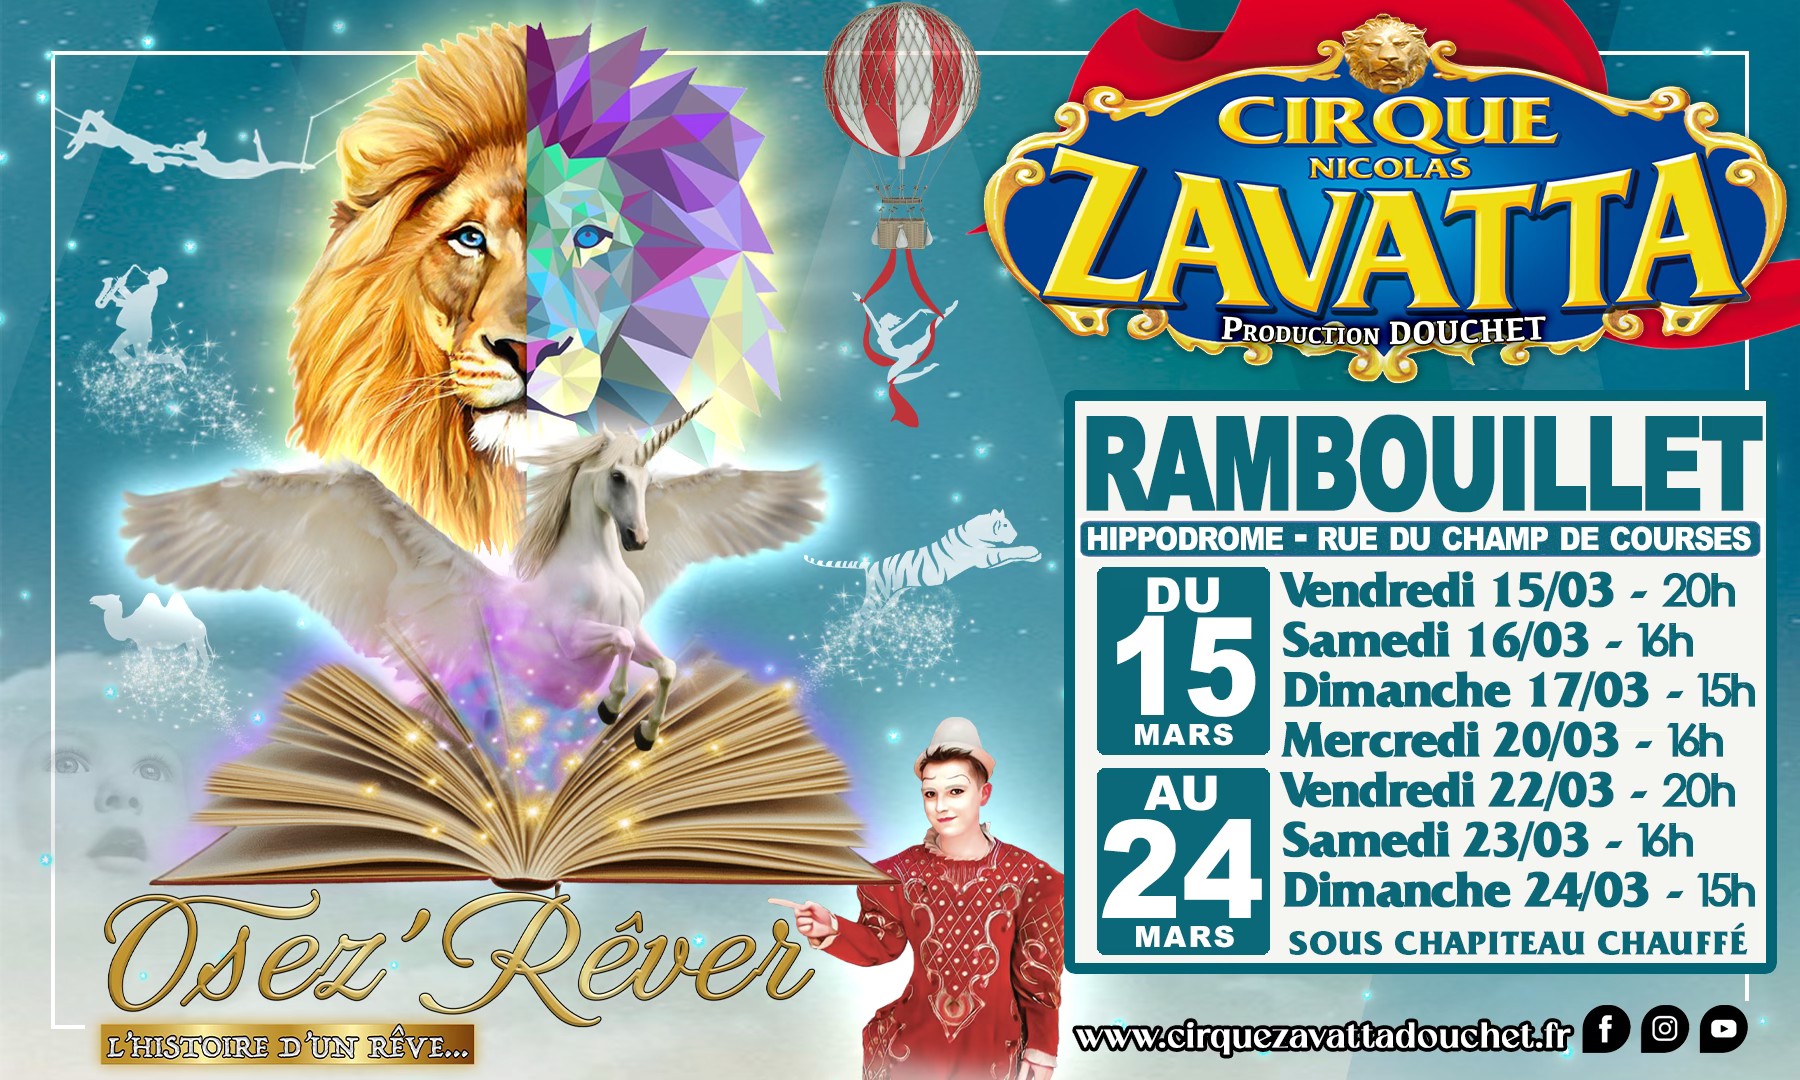 Zavatta douchet circus - Fremdenverkehrsamt Rambouillet